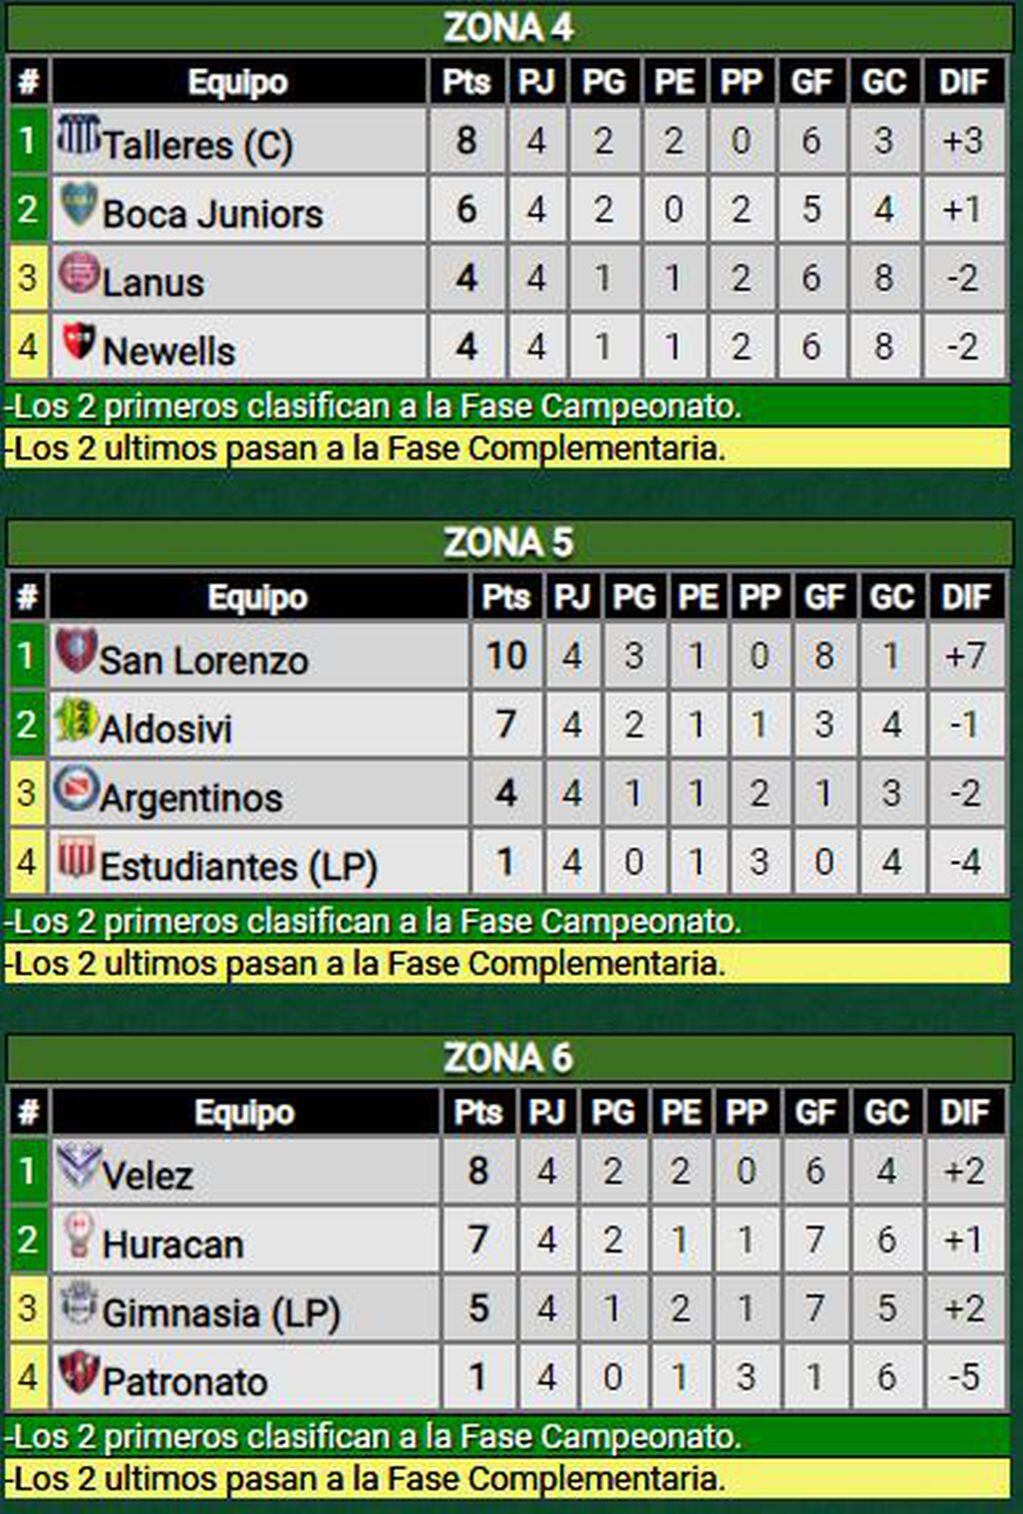 Zonas 4,5,6. Liga Profesional